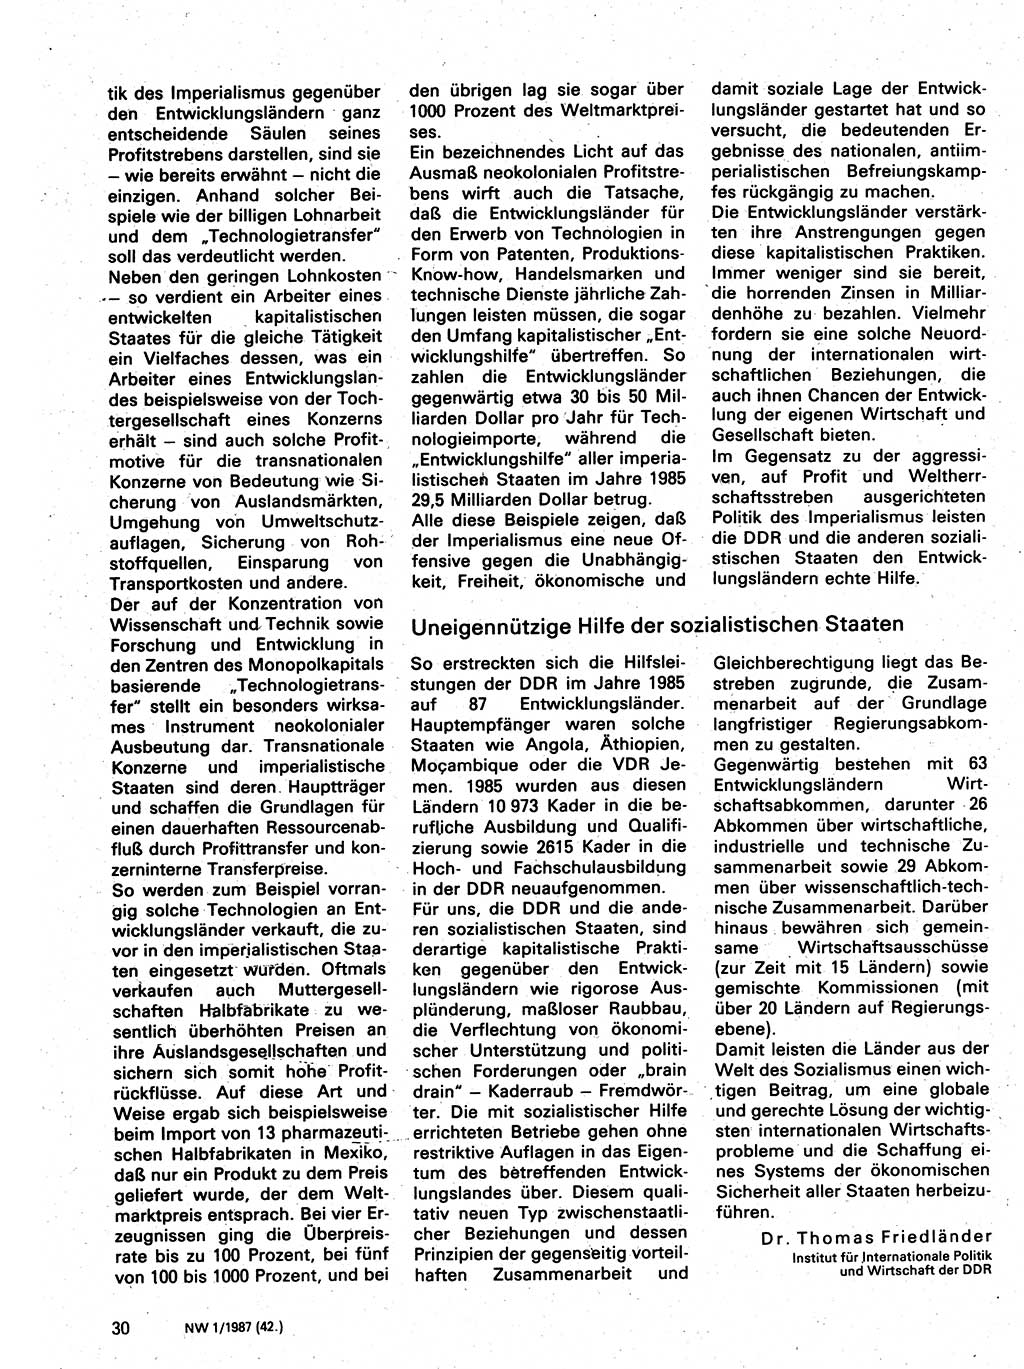 Neuer Weg (NW), Organ des Zentralkomitees (ZK) der SED (Sozialistische Einheitspartei Deutschlands) für Fragen des Parteilebens, 42. Jahrgang [Deutsche Demokratische Republik (DDR)] 1987, Seite 30 (NW ZK SED DDR 1987, S. 30)